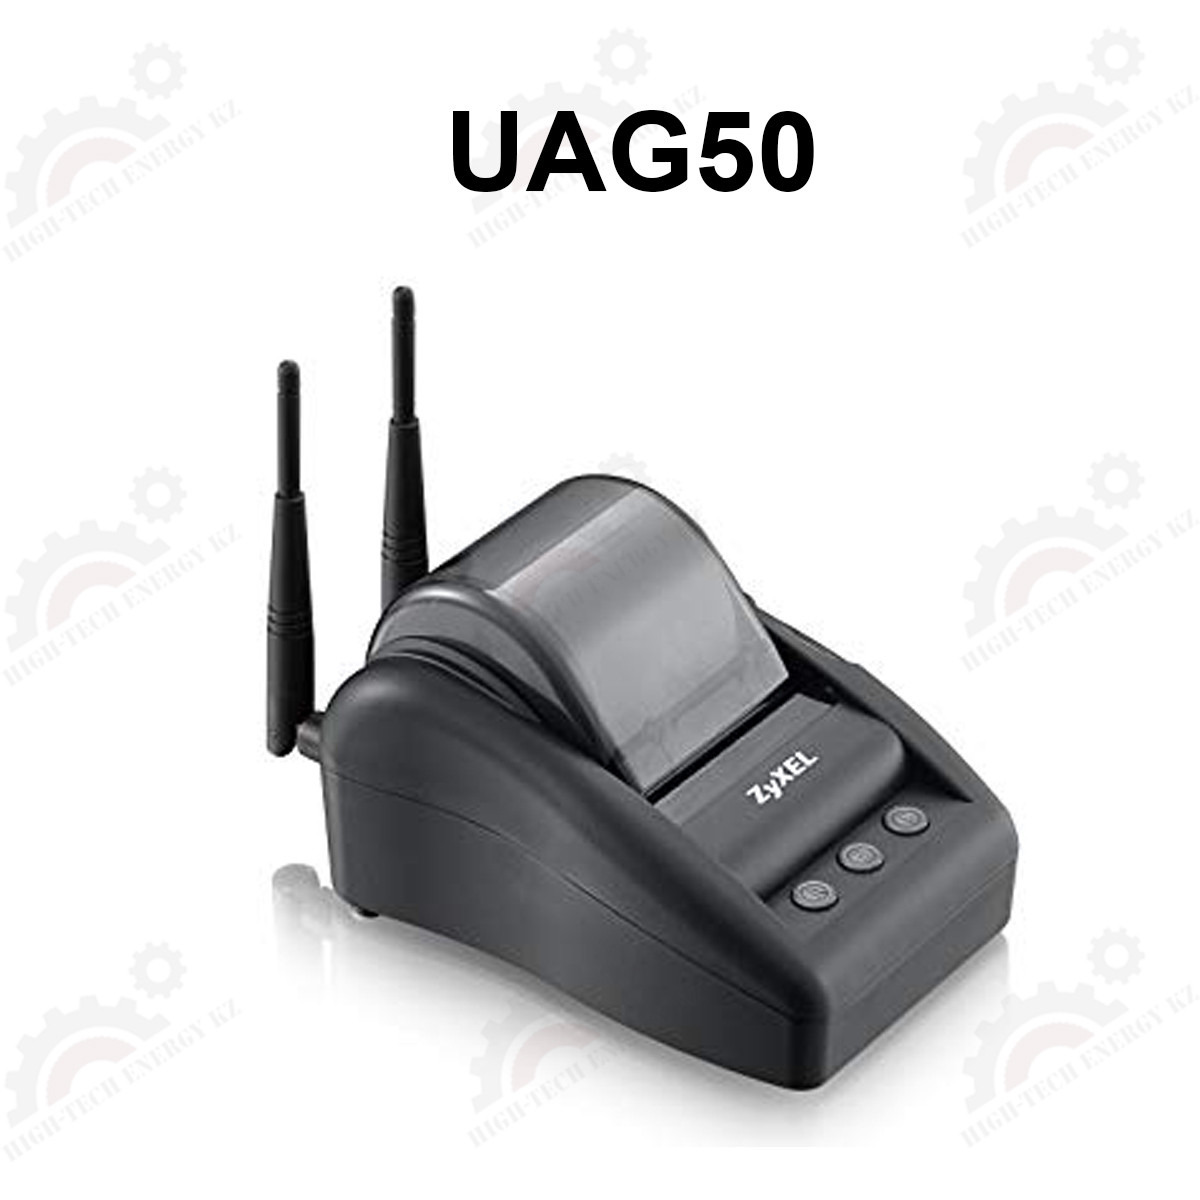 Шлюз унифицированного доступа UAG50